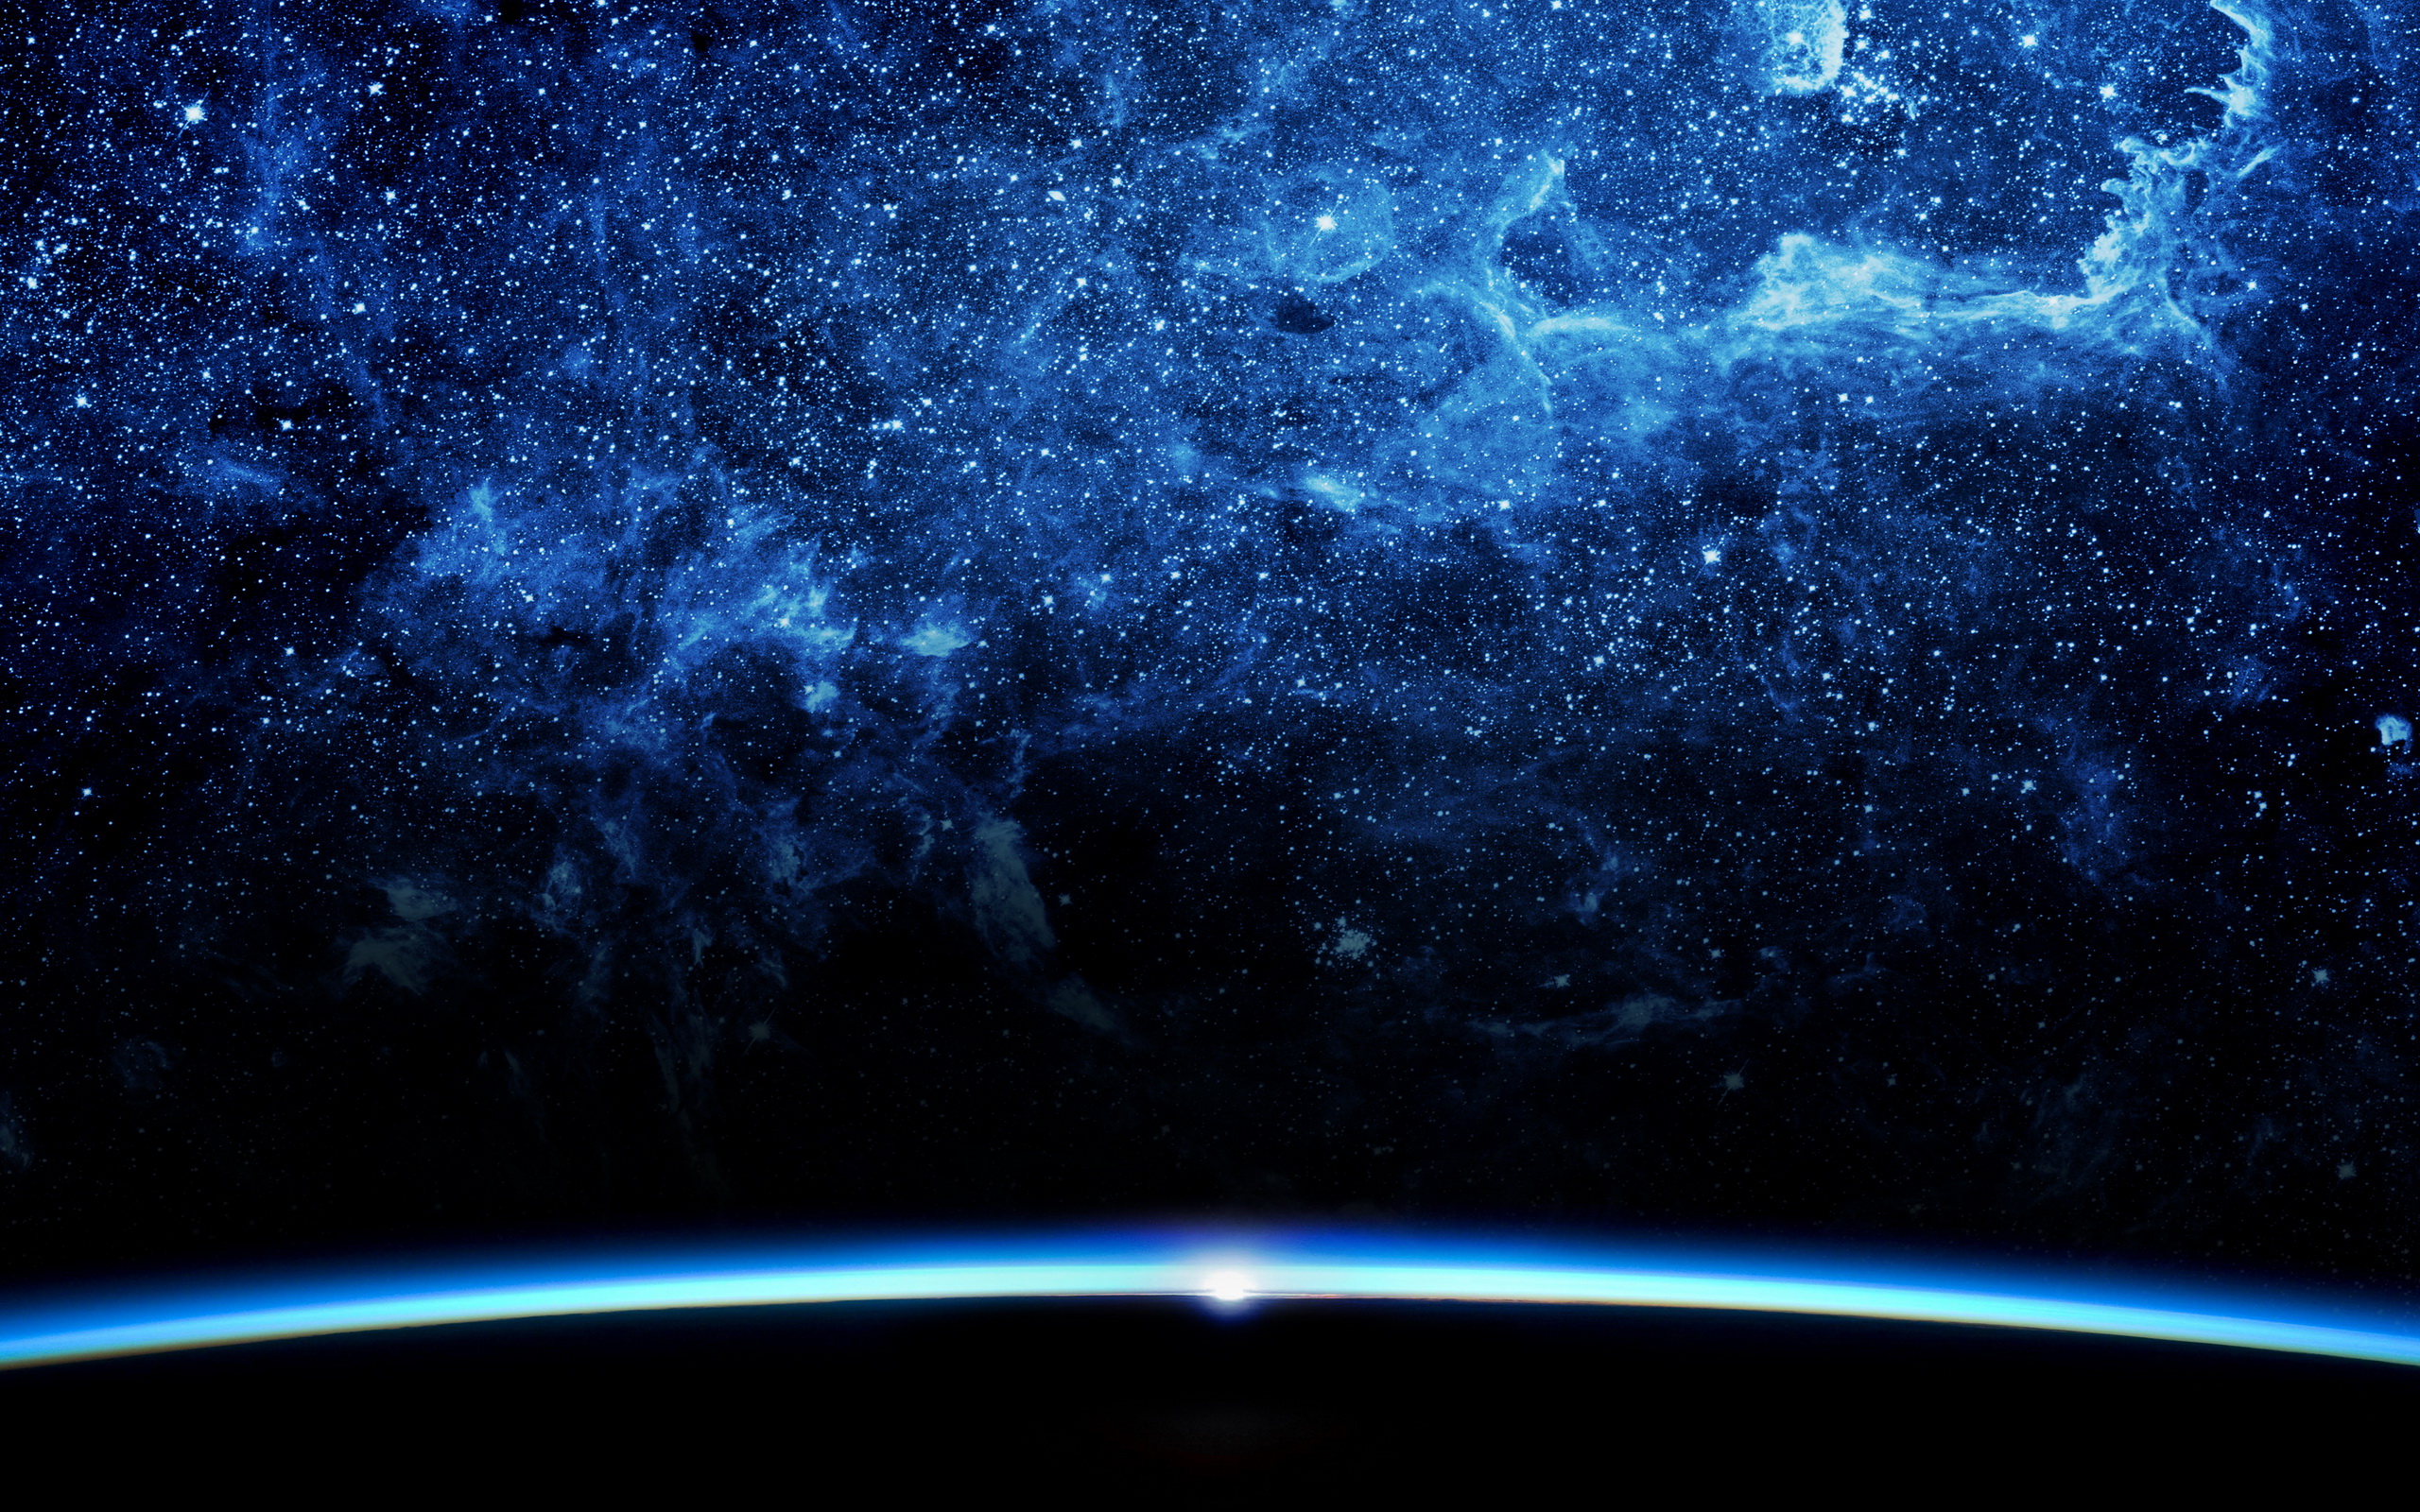 Обои космос земля горизонт картинки на рабочий стол на тему Космос - скачать бесплатно